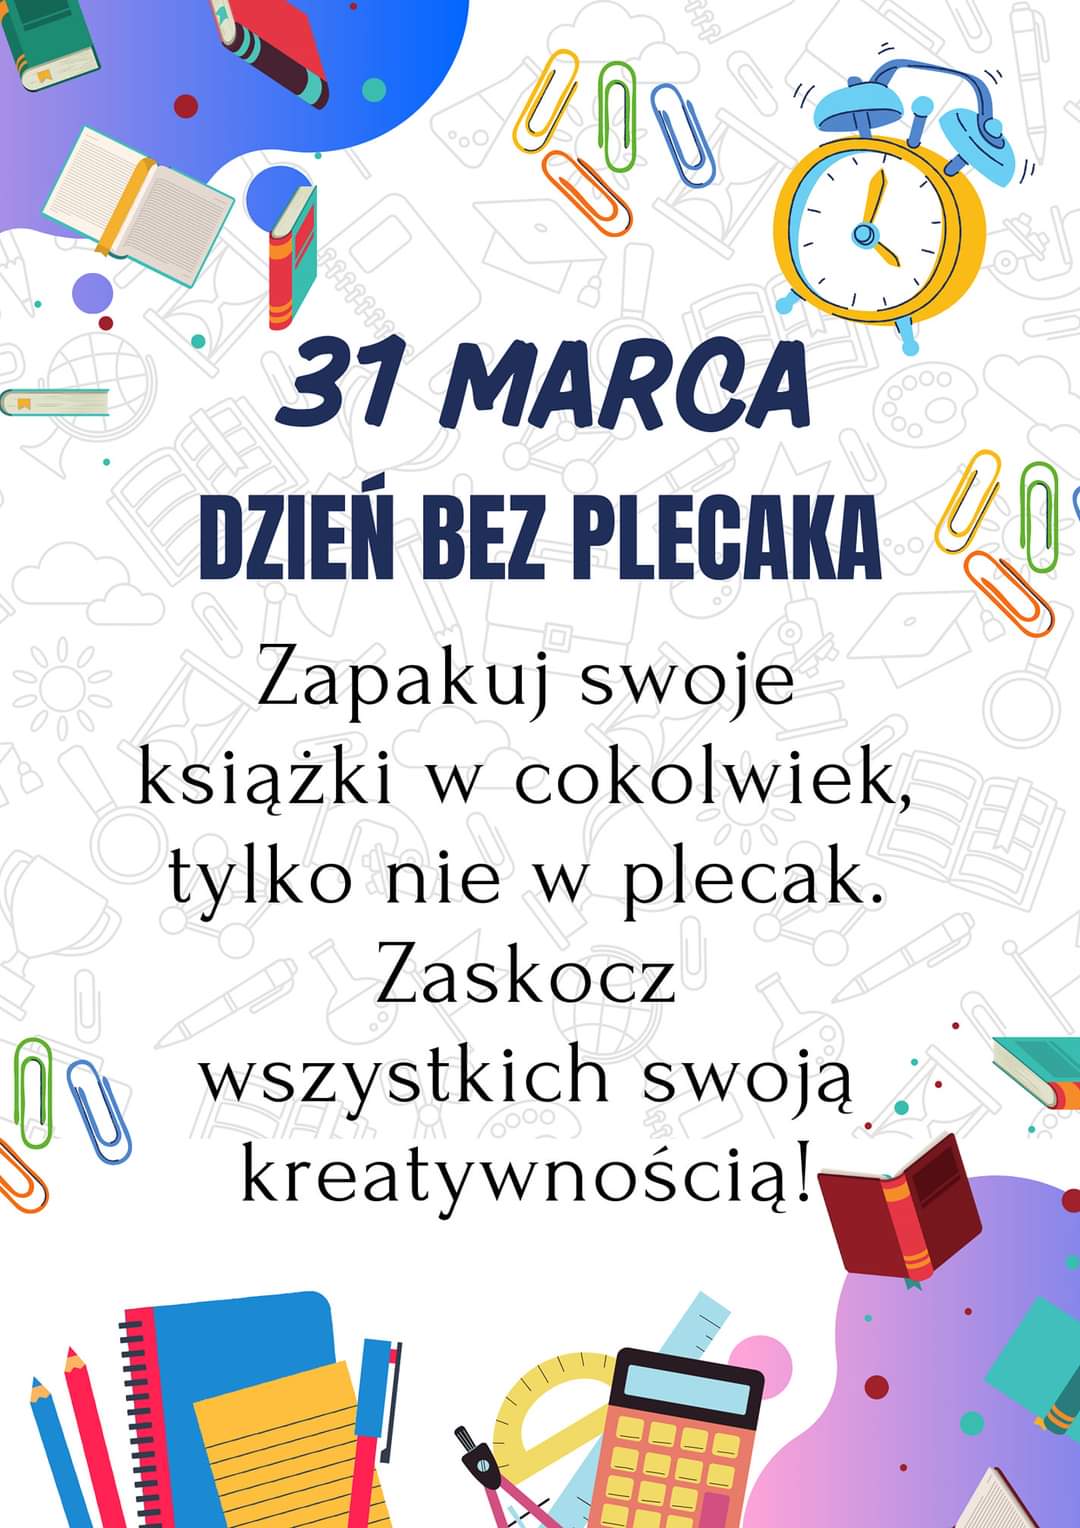 Plakat akcji DZIEŃ BEZ PLECAKA - tekst z plakatu w rozwinięciu artykułu.